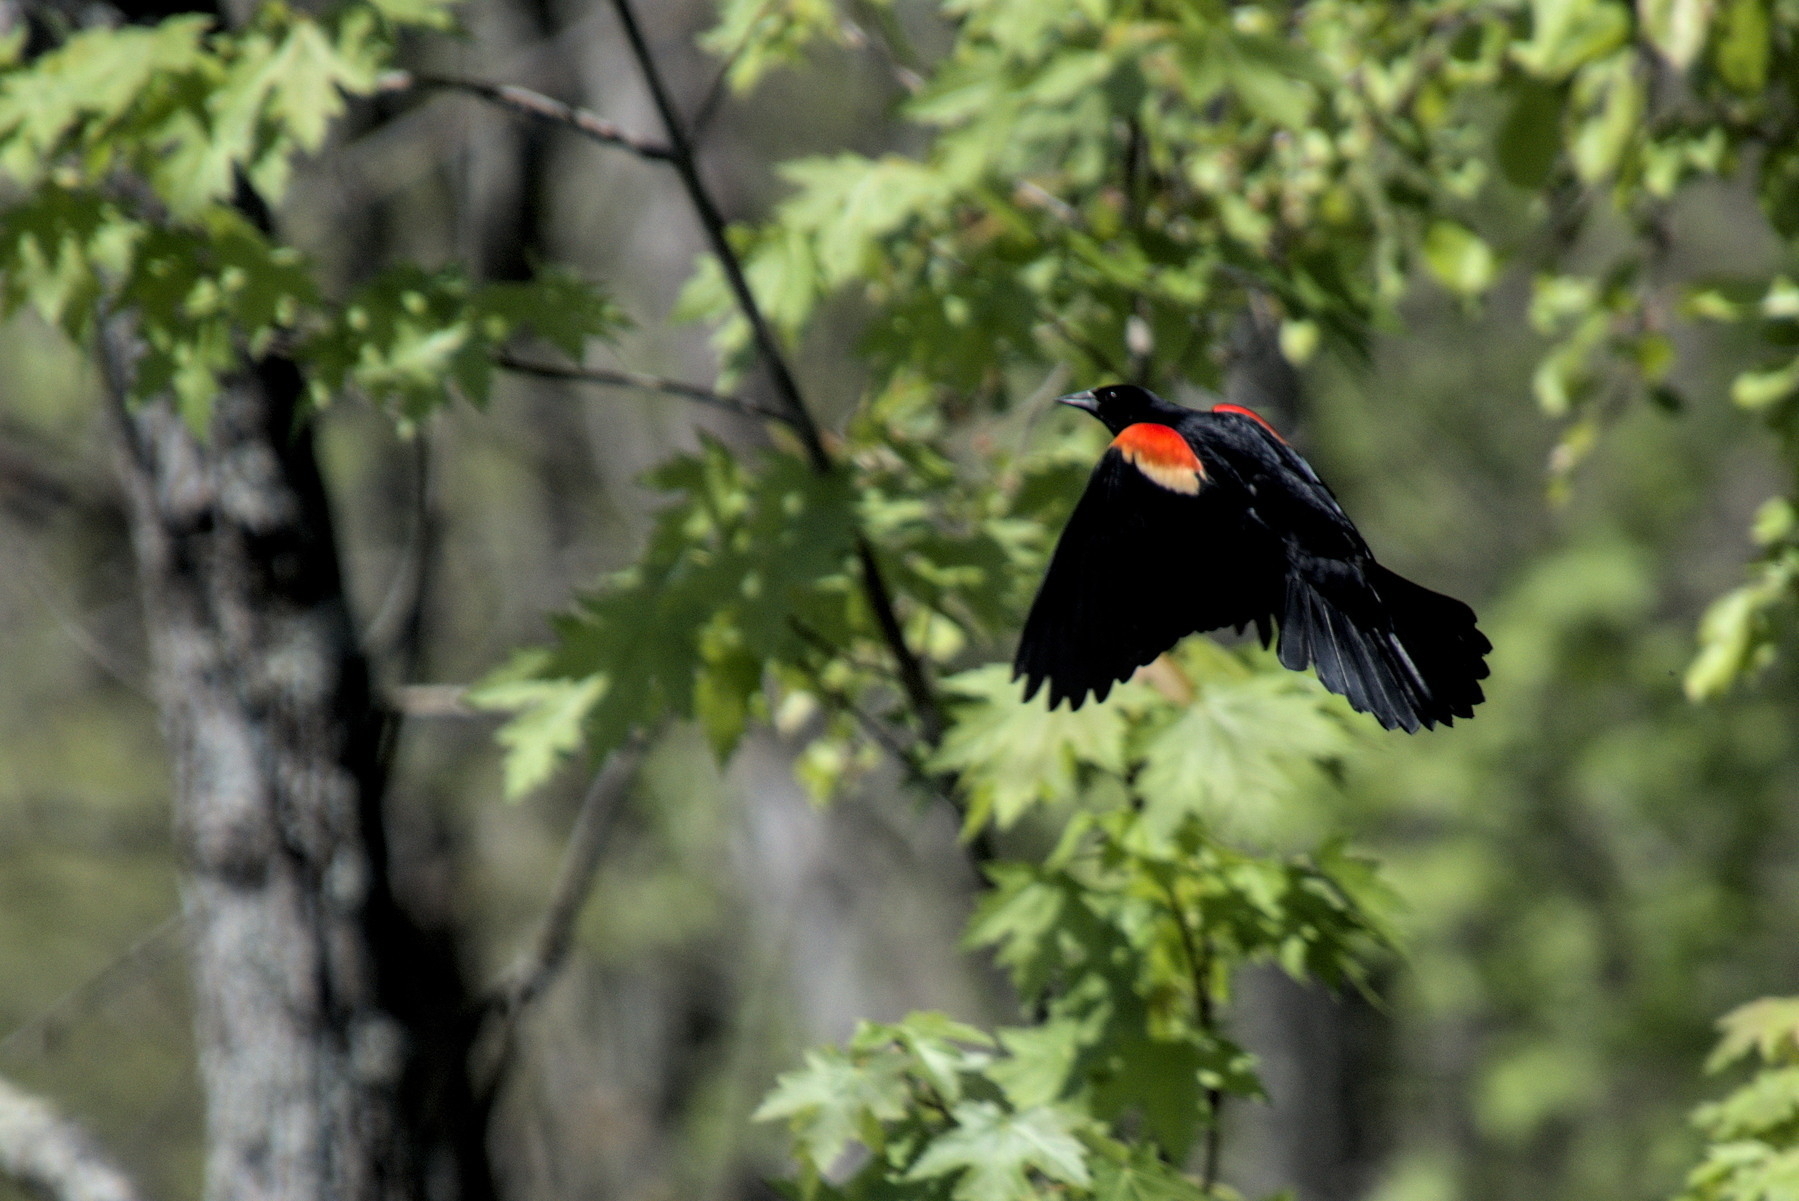 Red-winged Blackbird in flight.